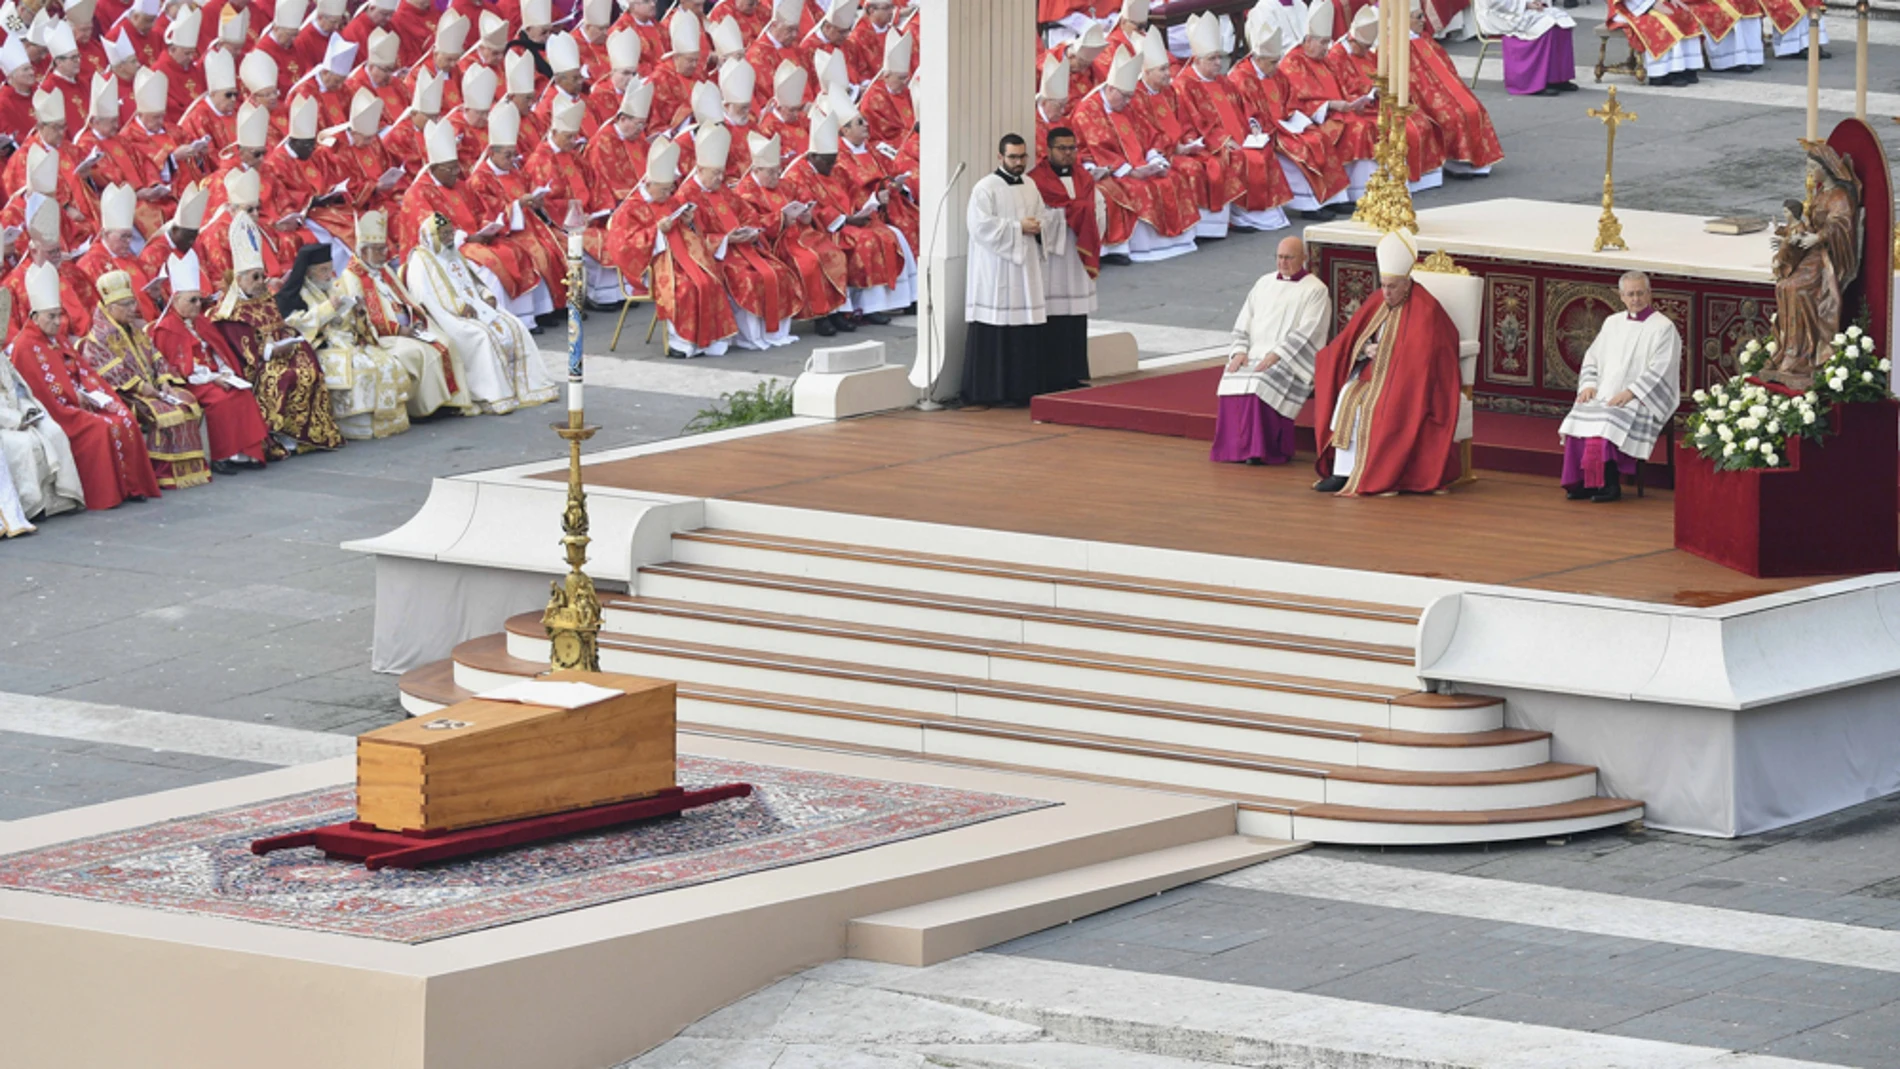 Alrededor de 400 obispos y unos 4.000 sacerdotes –todos vestidos con sus paramentos ceremoniales– se reunieron ayer en una blindada plaza de San Pedro de El Vaticano para asistir al funeral del papa Benedicto XVI, presidido por el papa reinante, Francisco